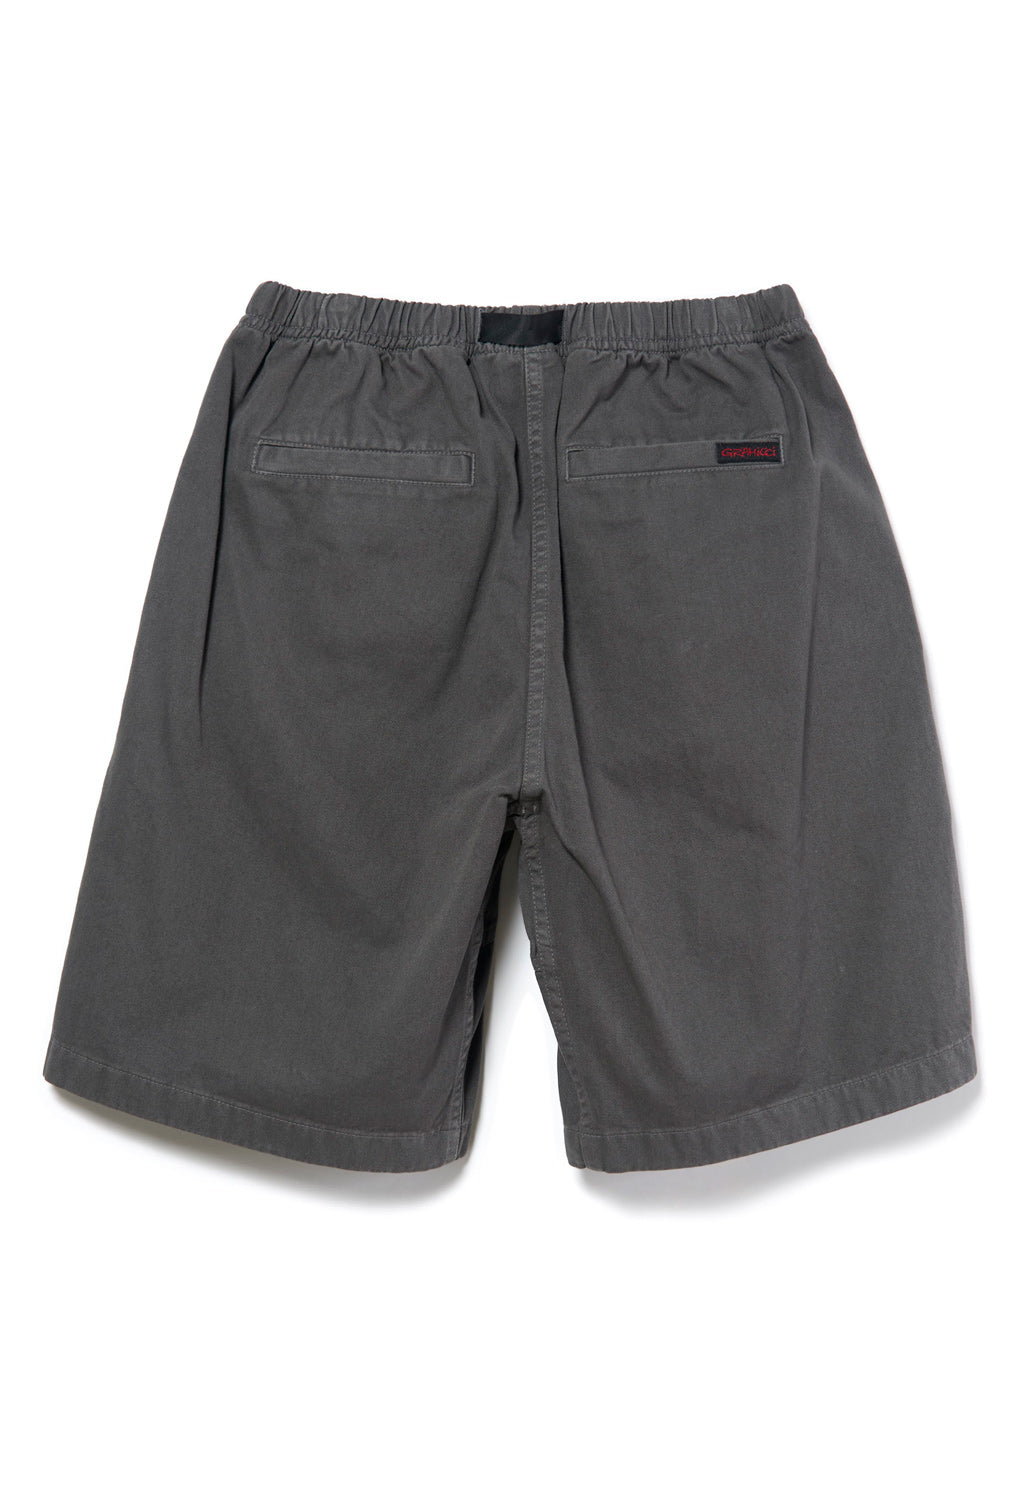 Gramicci Men's G Shorts - Charcoal